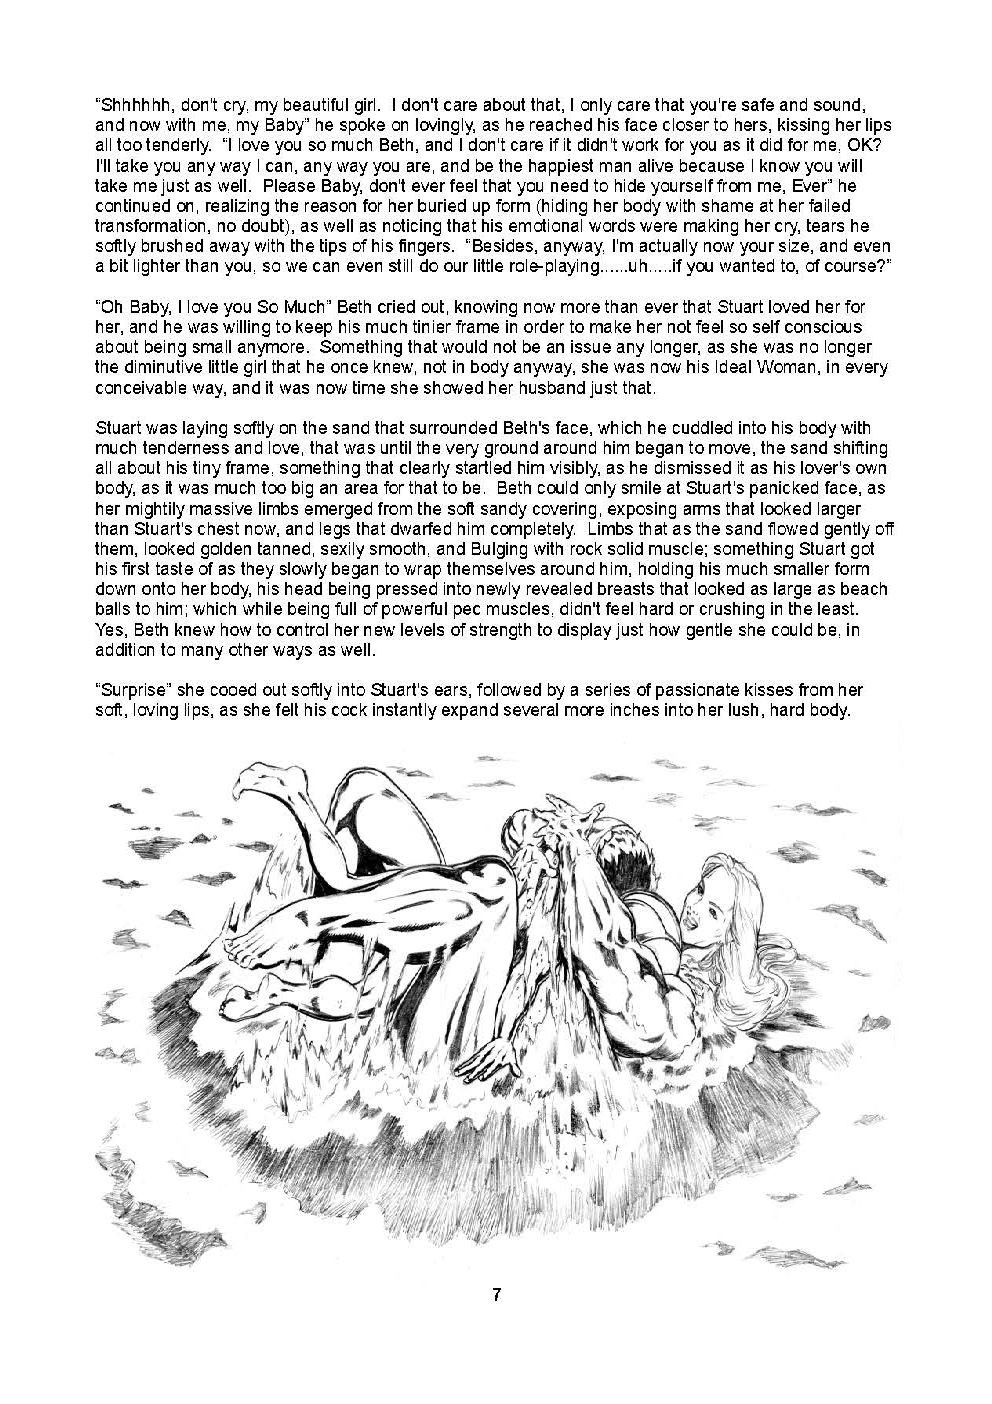 Fantasy Island - Amazon Style porn comic picture 7